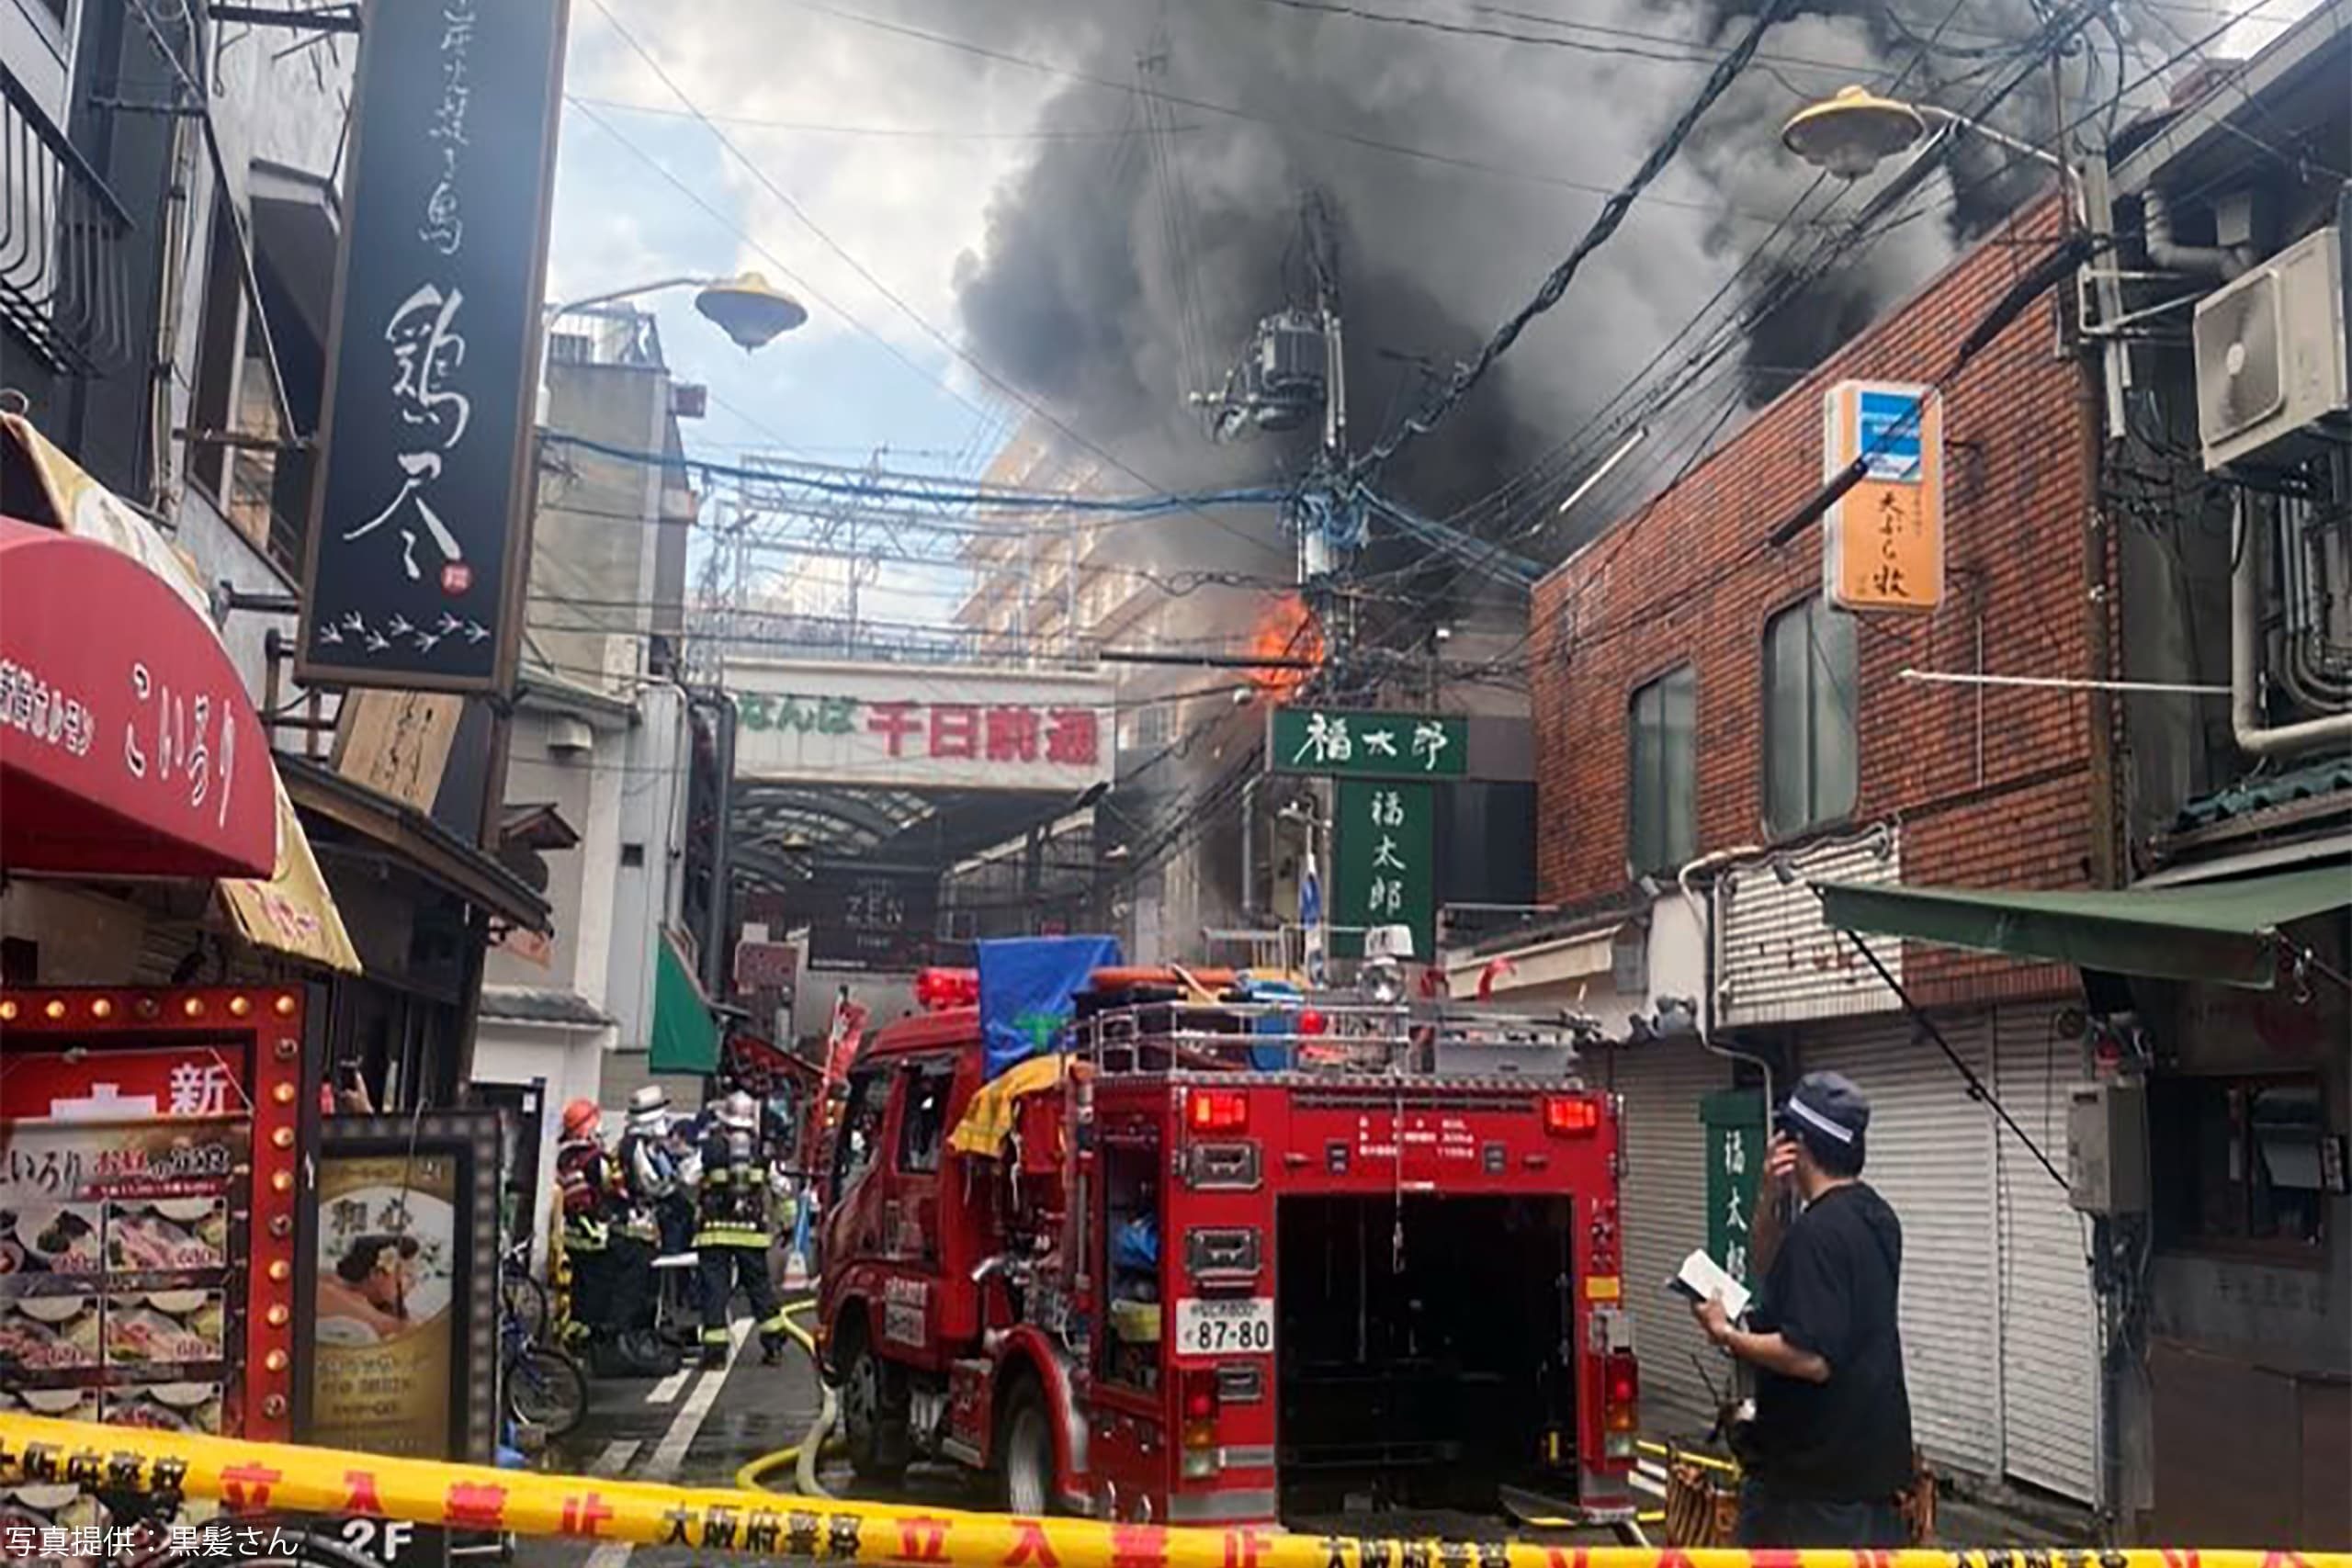 大阪ミナミで店舗火災 消火活動続く 黒煙が高くあがり繁華街騒然 Sirabeekasai